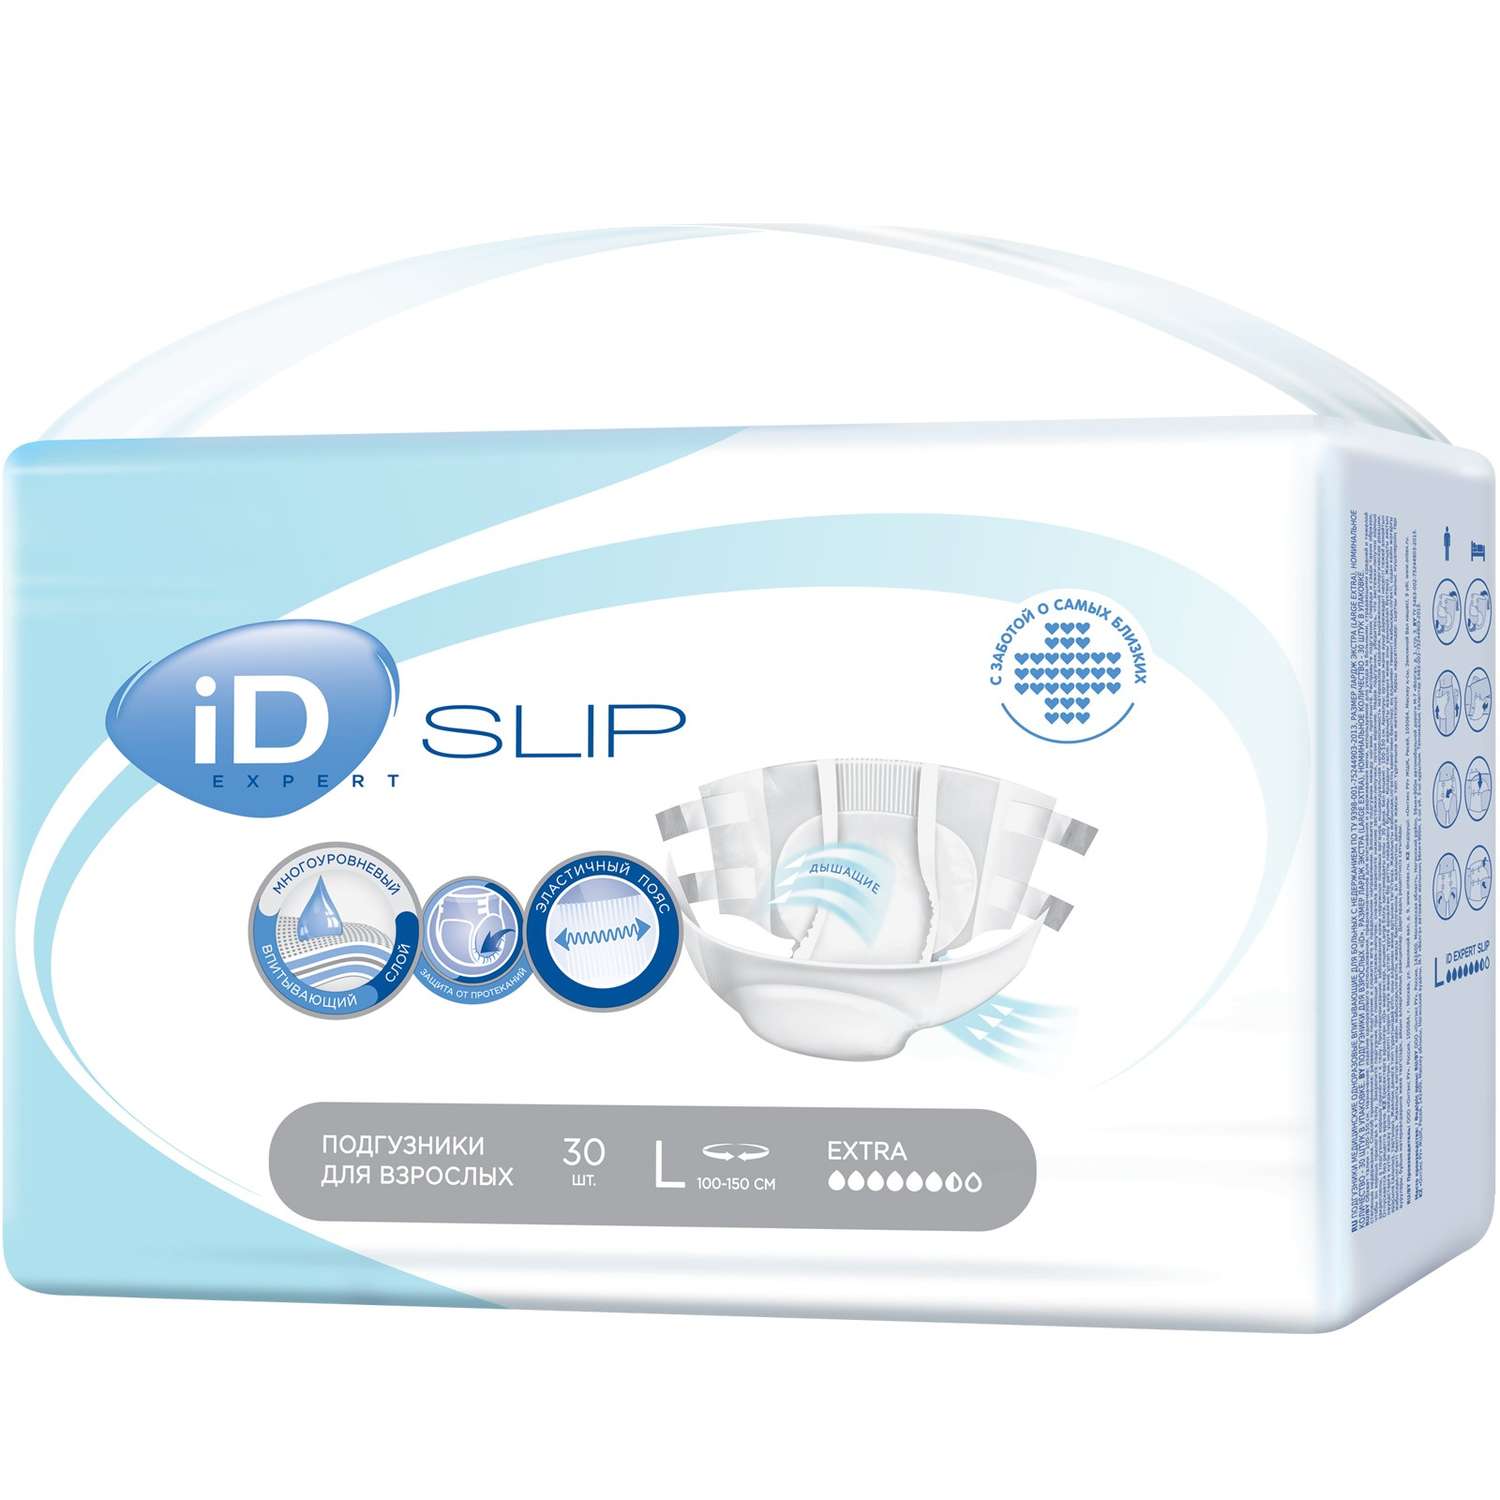 Подгузники для взрослых iD SLIP Expert L 30 шт. - фото 2